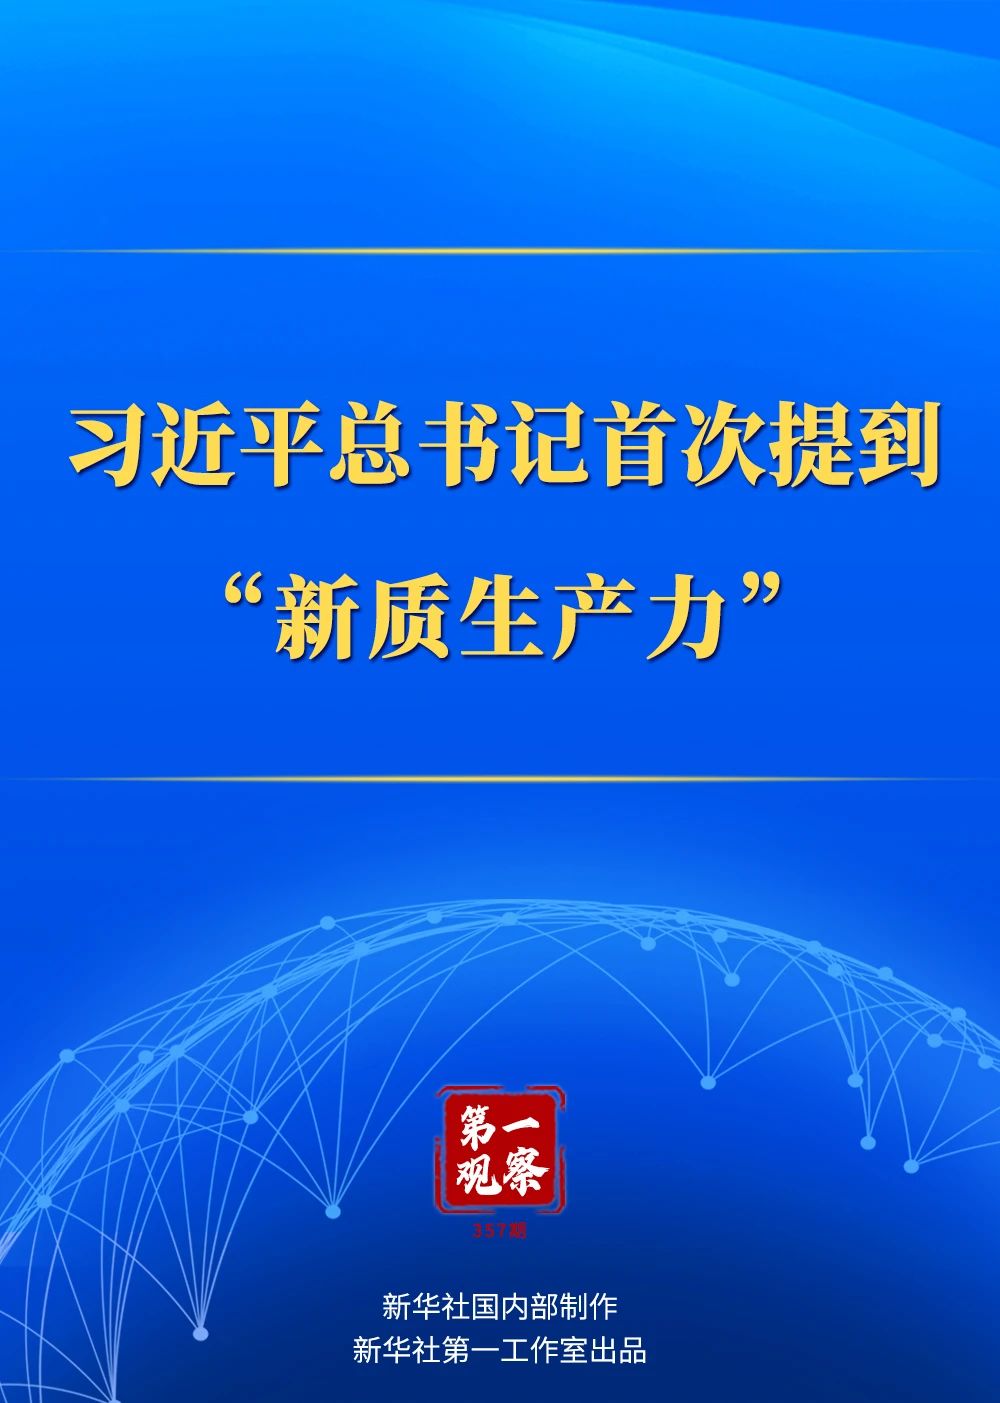 习近平总书记首次提到“新质生产力”